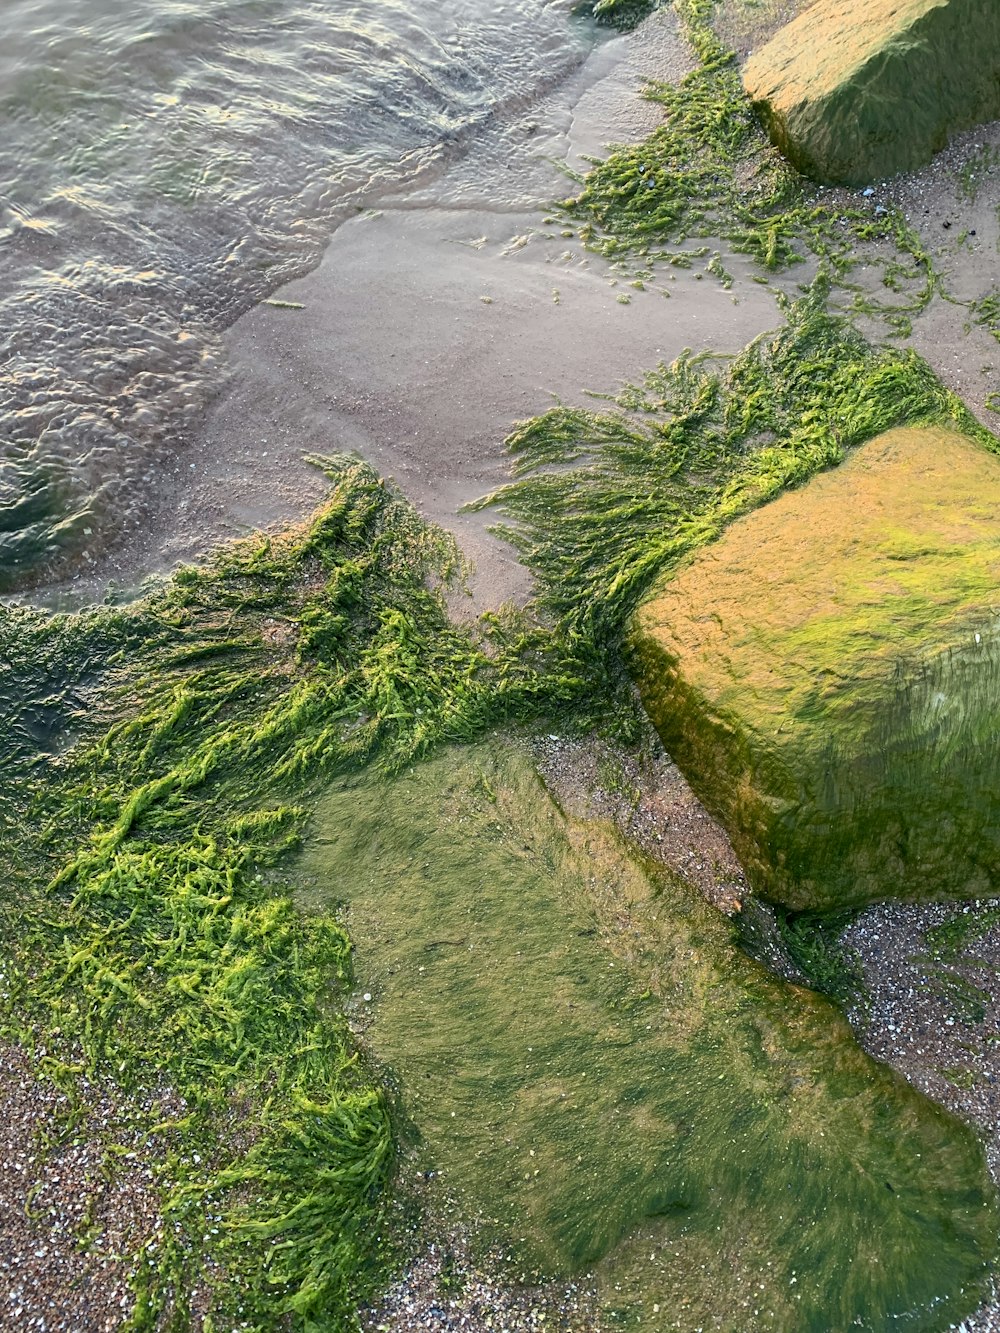 green moss growing on rocks near the water